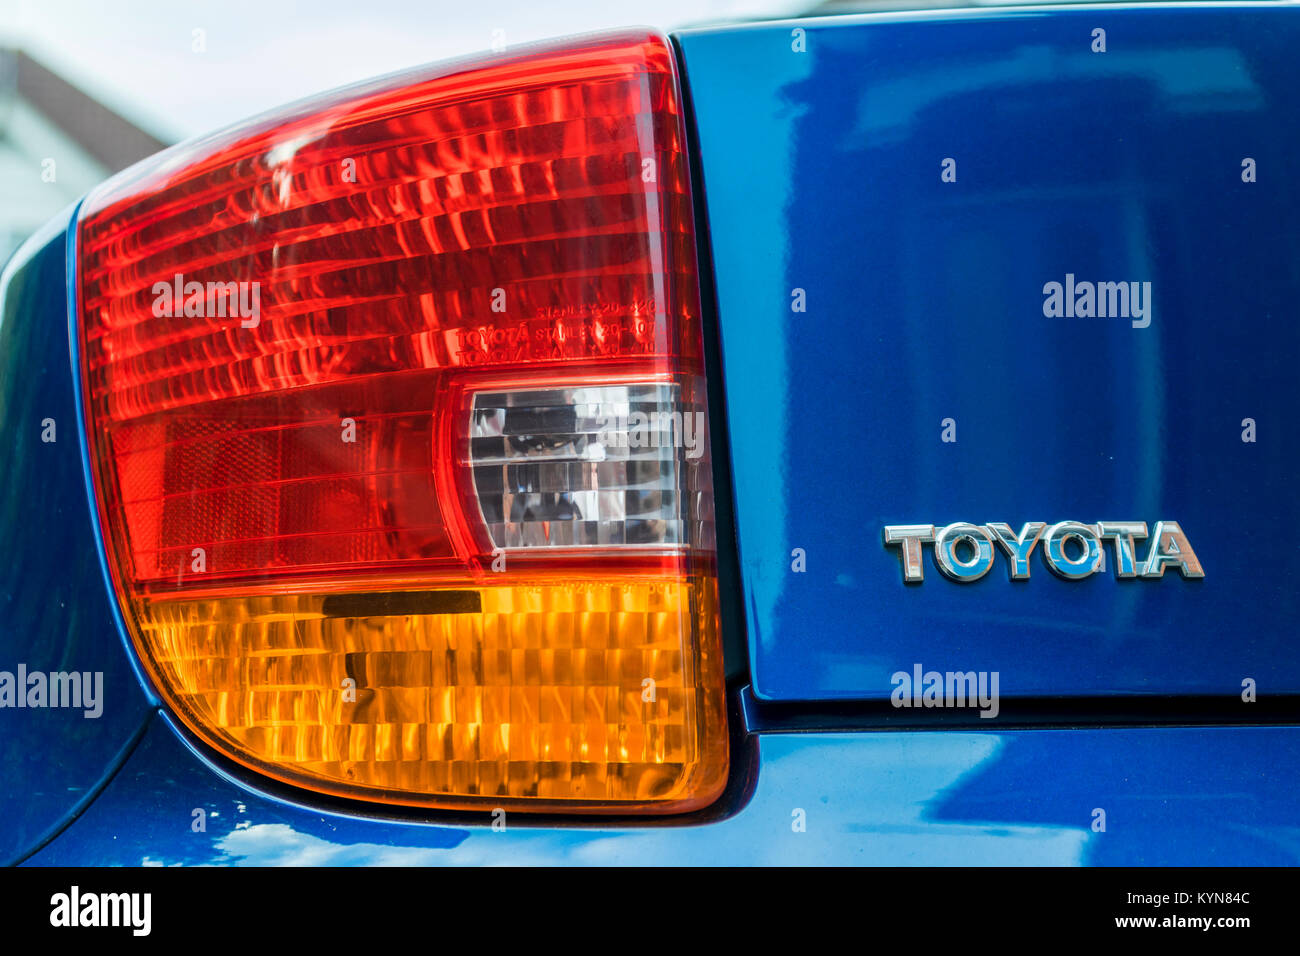 Cerca de una luz trasera de un automóvil Toyota de color azul con la marca/logotipo en letras metálicas Foto de stock